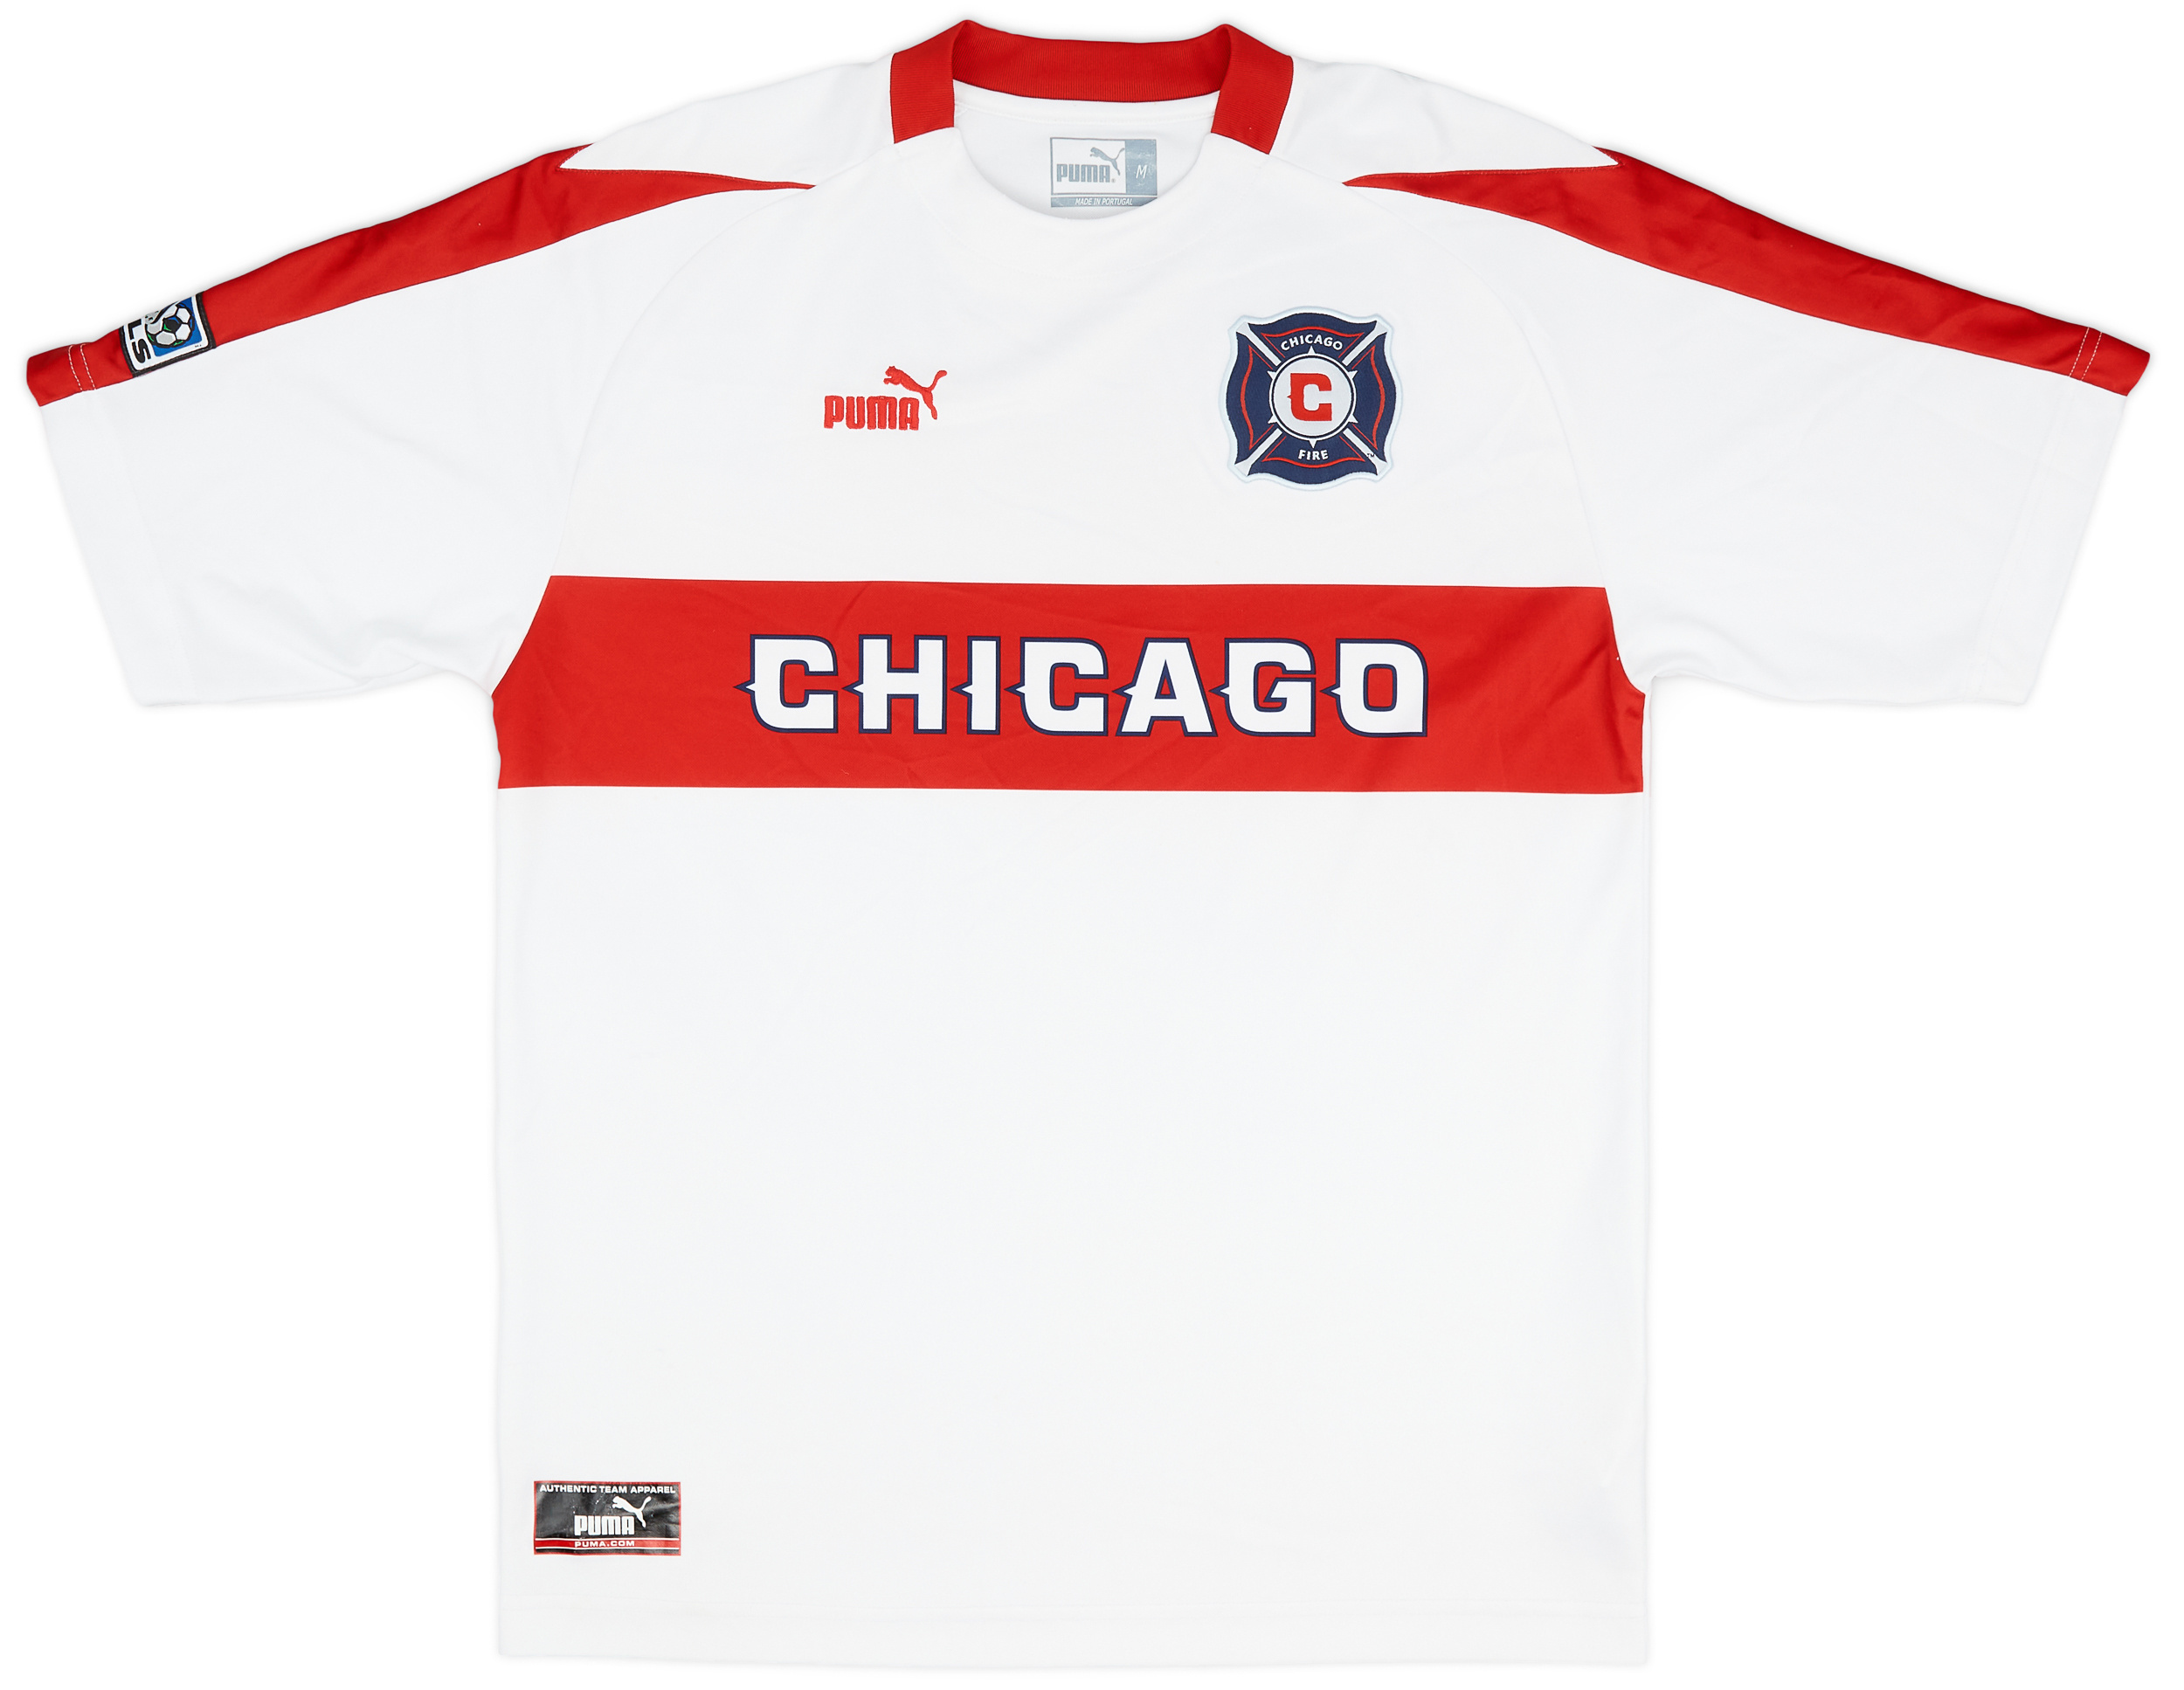 Retro Chicago Fire Shirt